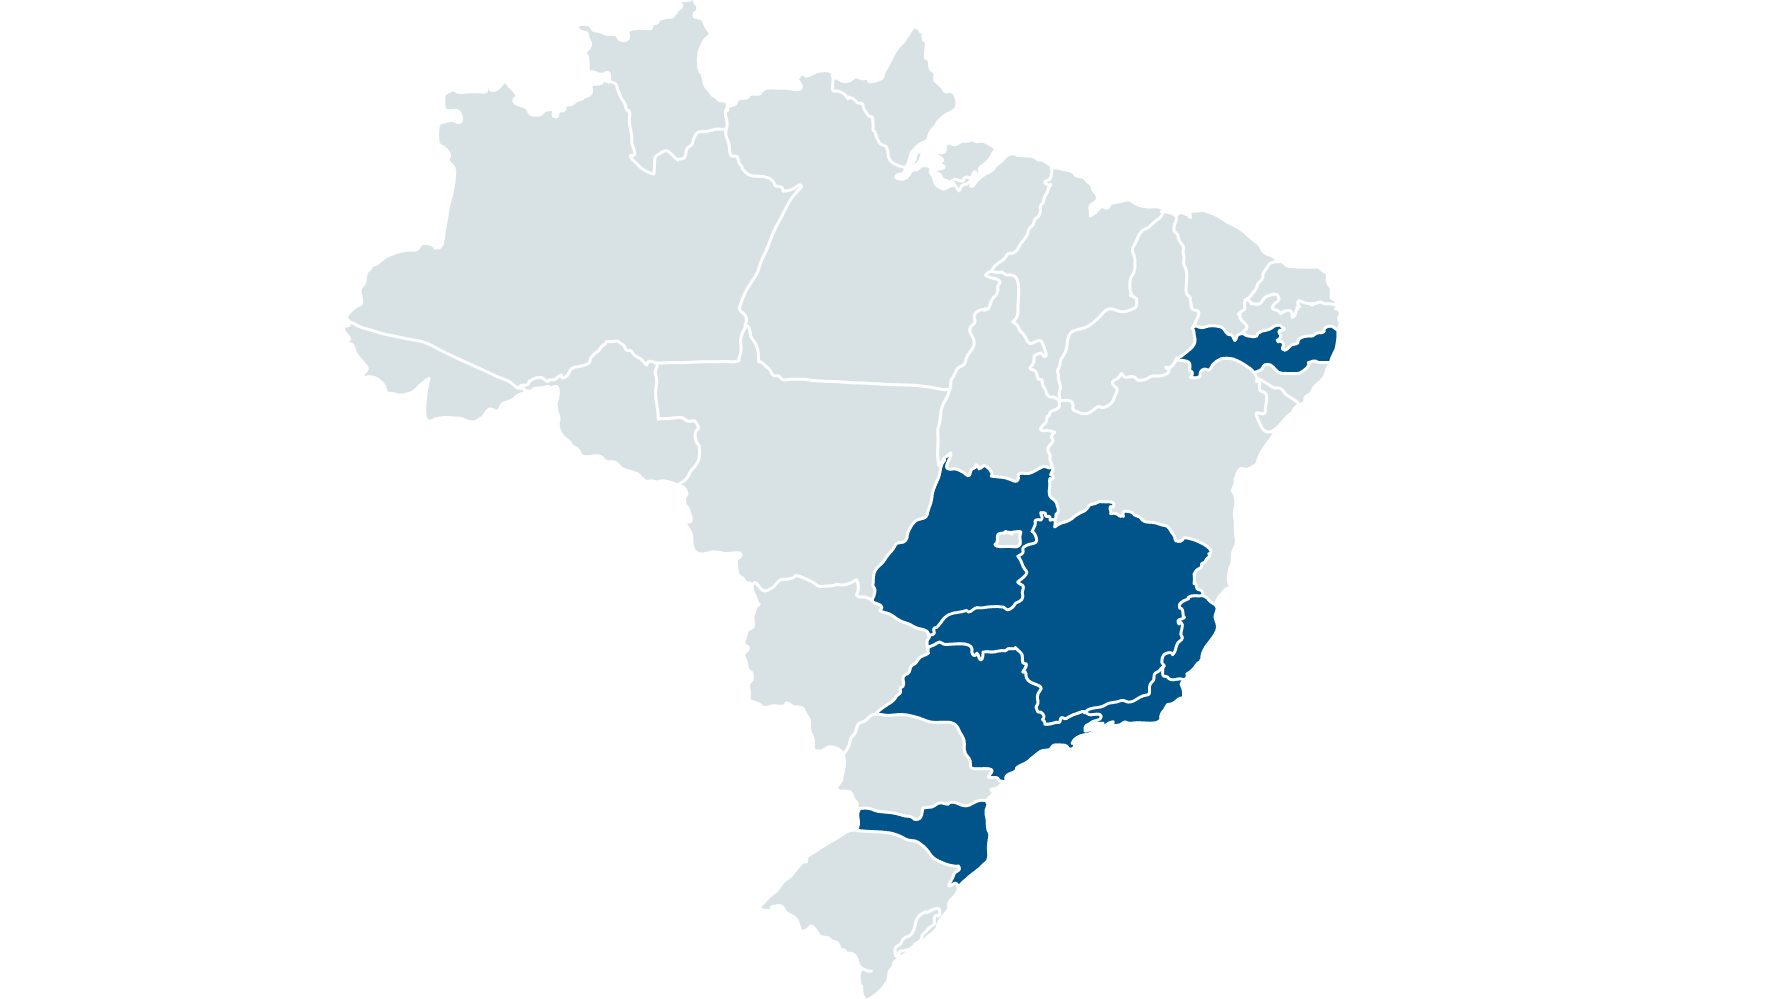 Mapa do Brasil com alguns estados com cores diferentes